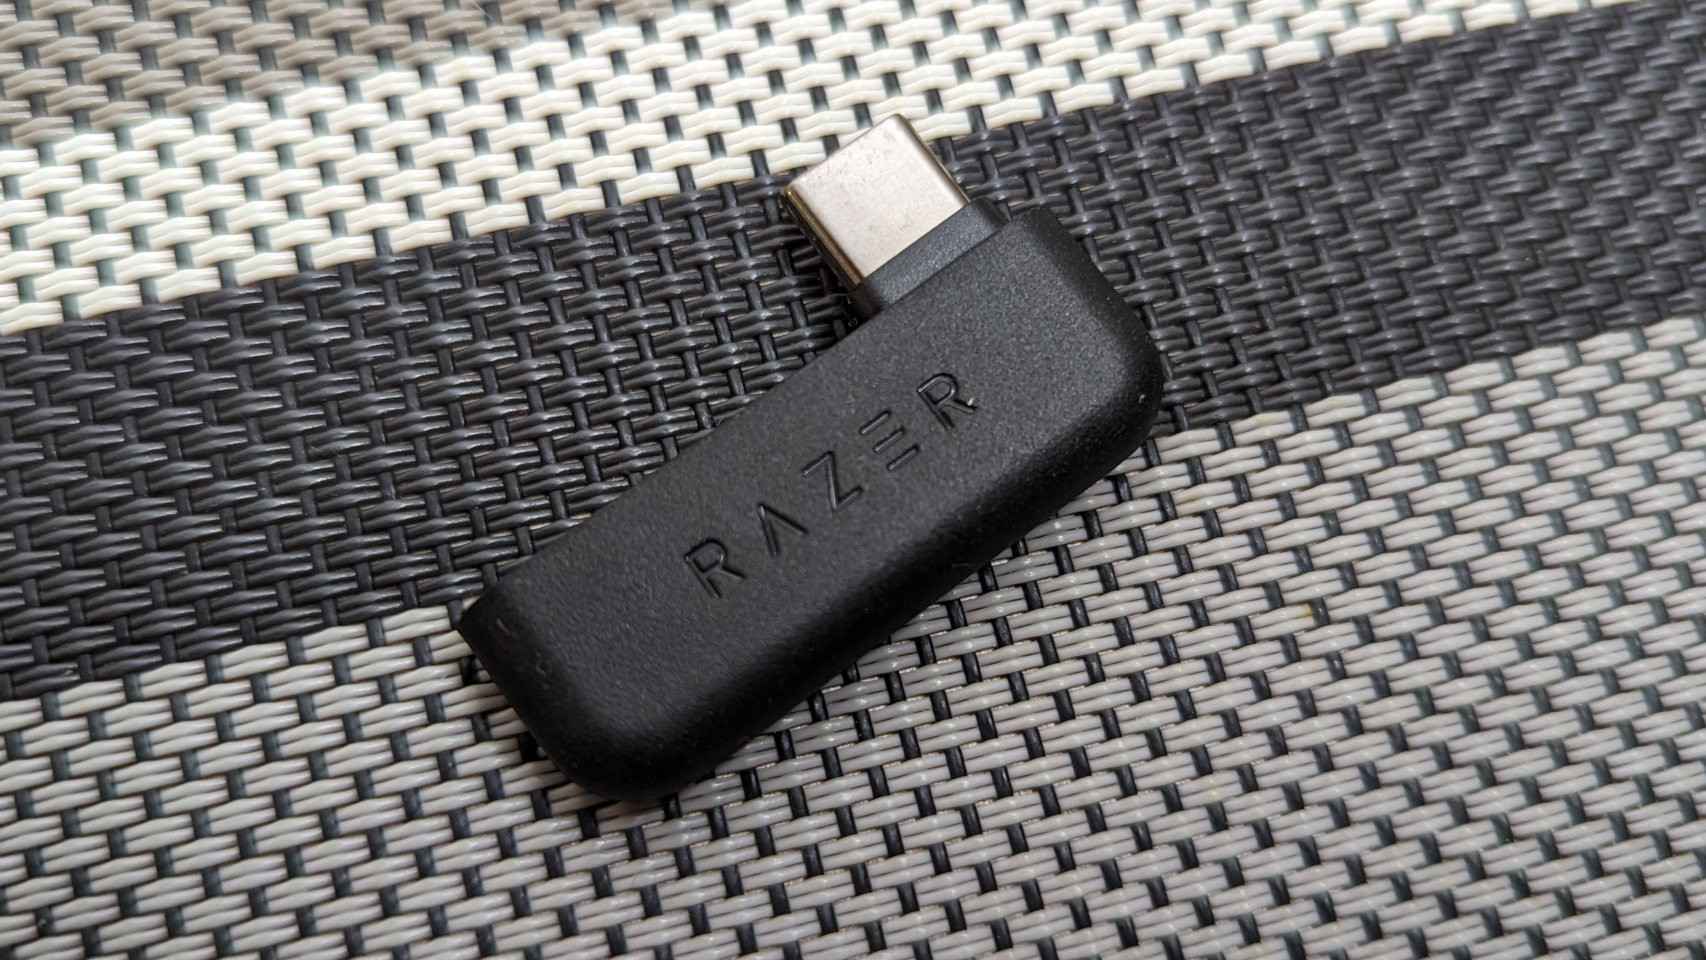 El adaptador HyperSpeed USB-C incluido con los auriculares de Razer